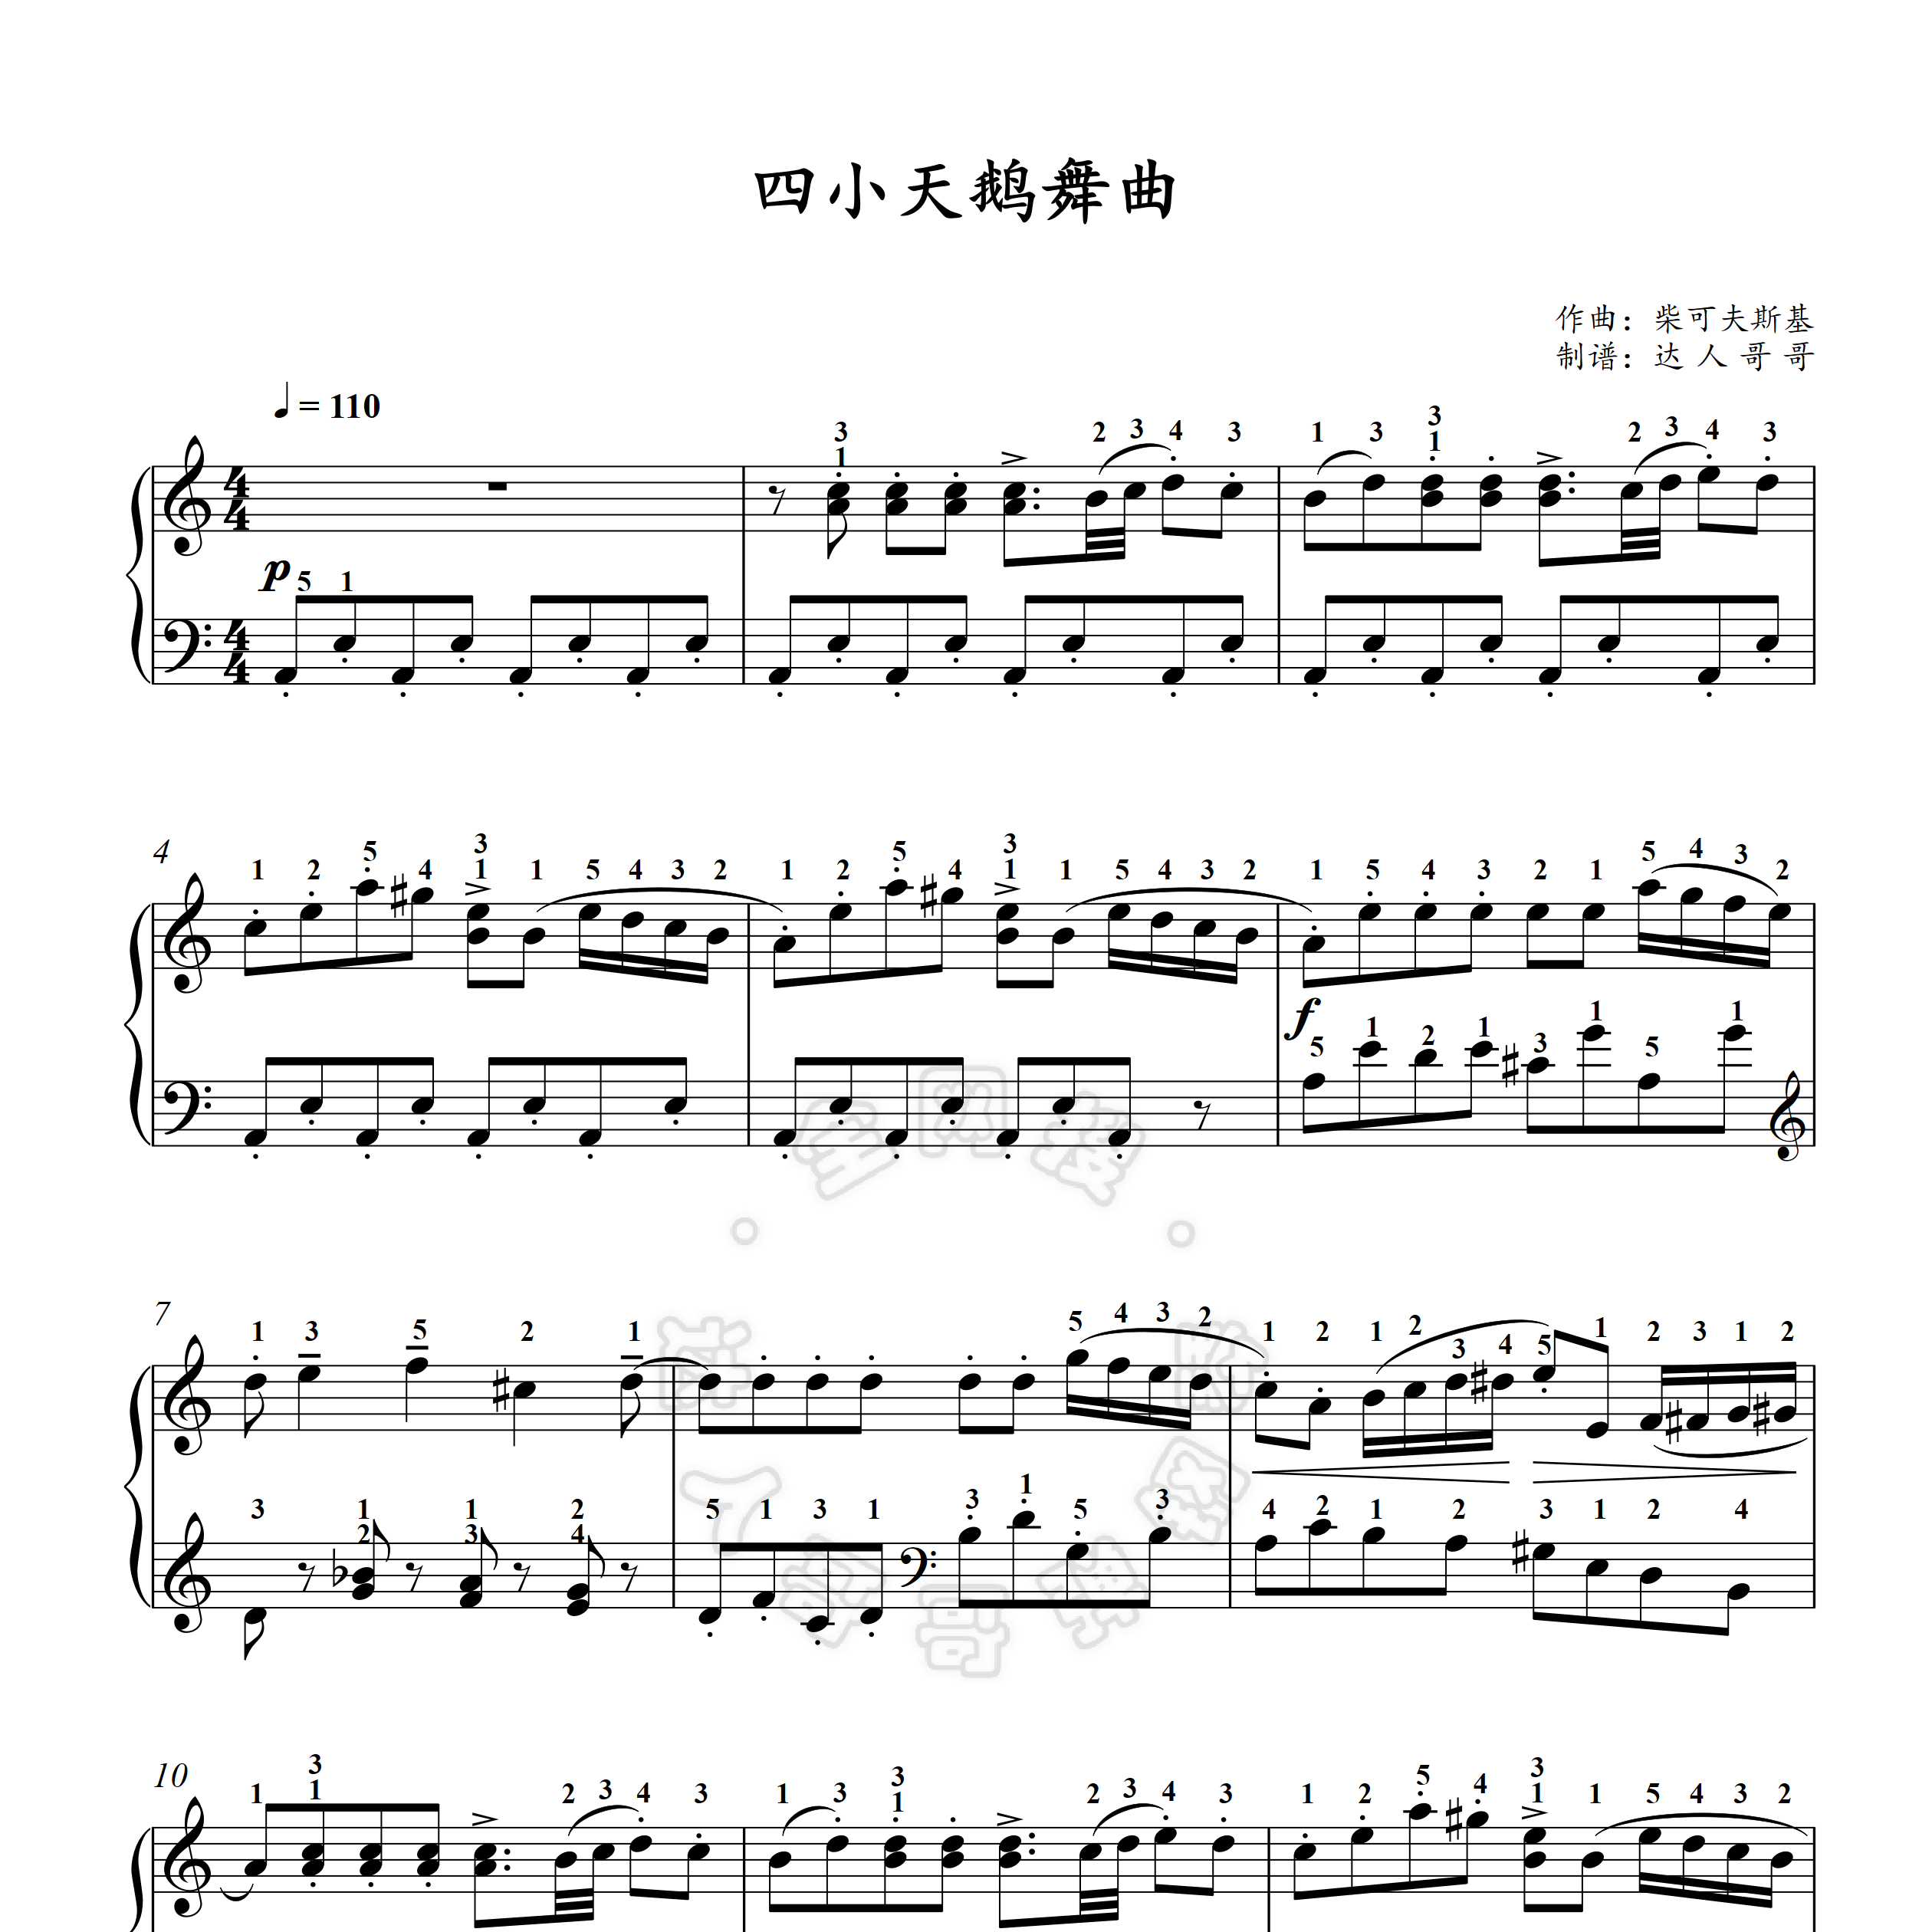 四小天鹅舞曲钢琴谱 带指法 有视频 原版 五线谱/简谱 柴可夫斯基